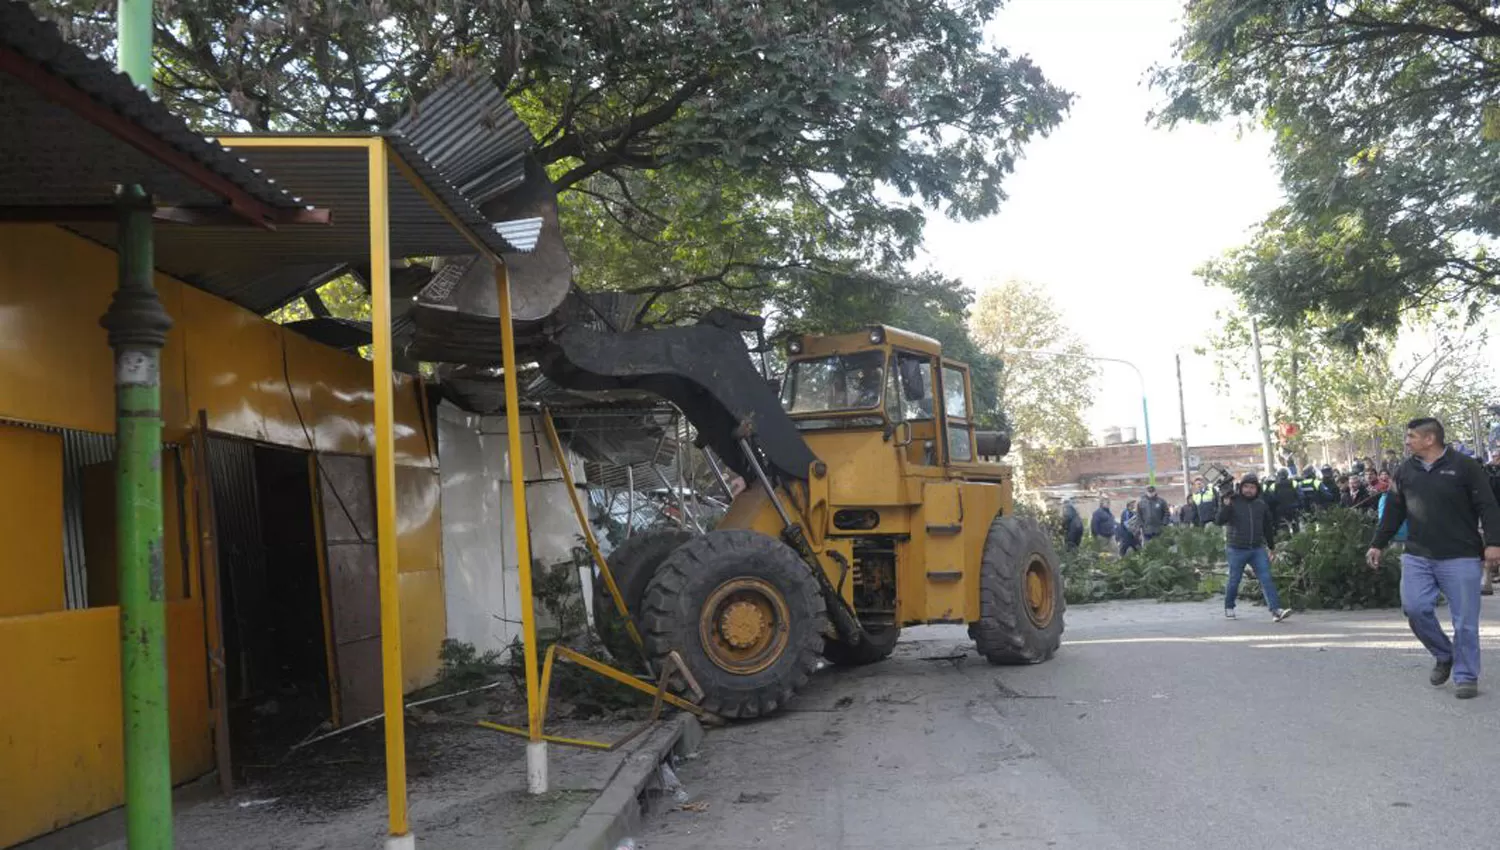 CON TOPADORAS. Una máquina destruye uno de los puestos. LA GACETA / FRANCO VERA